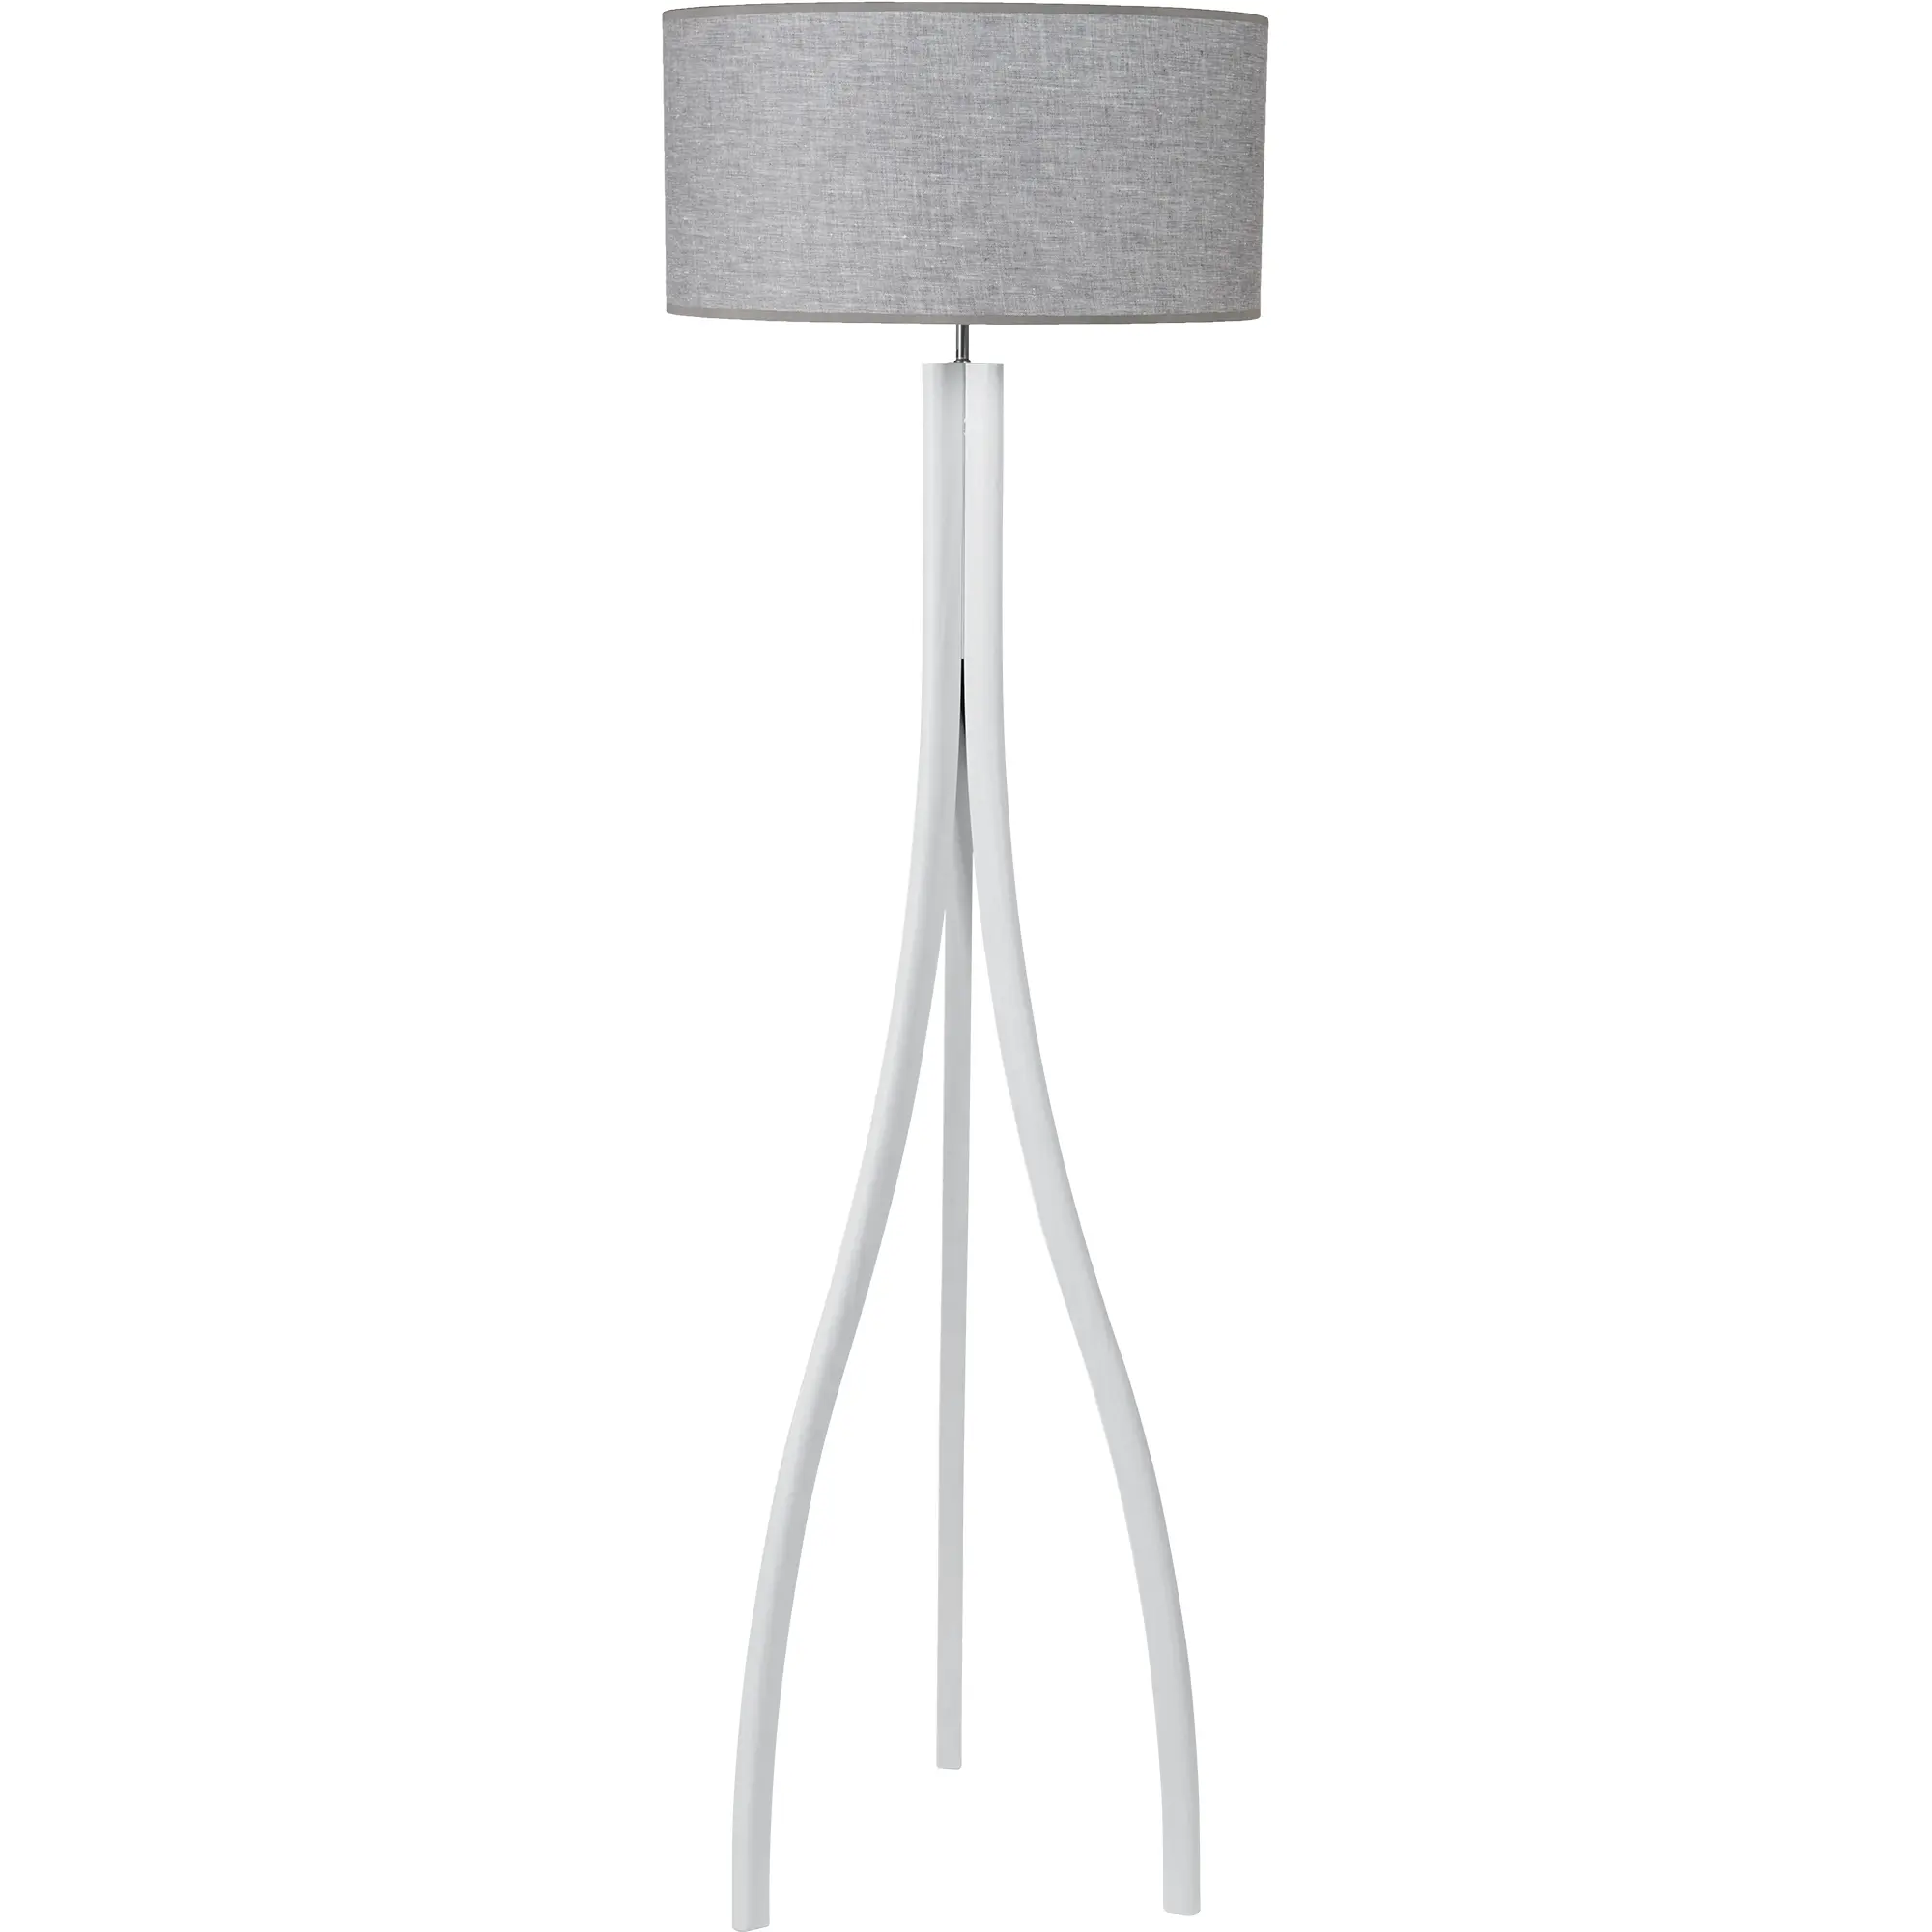 Holz-Stehlampe Skandinavia aus Esche in weiß, hellgrau